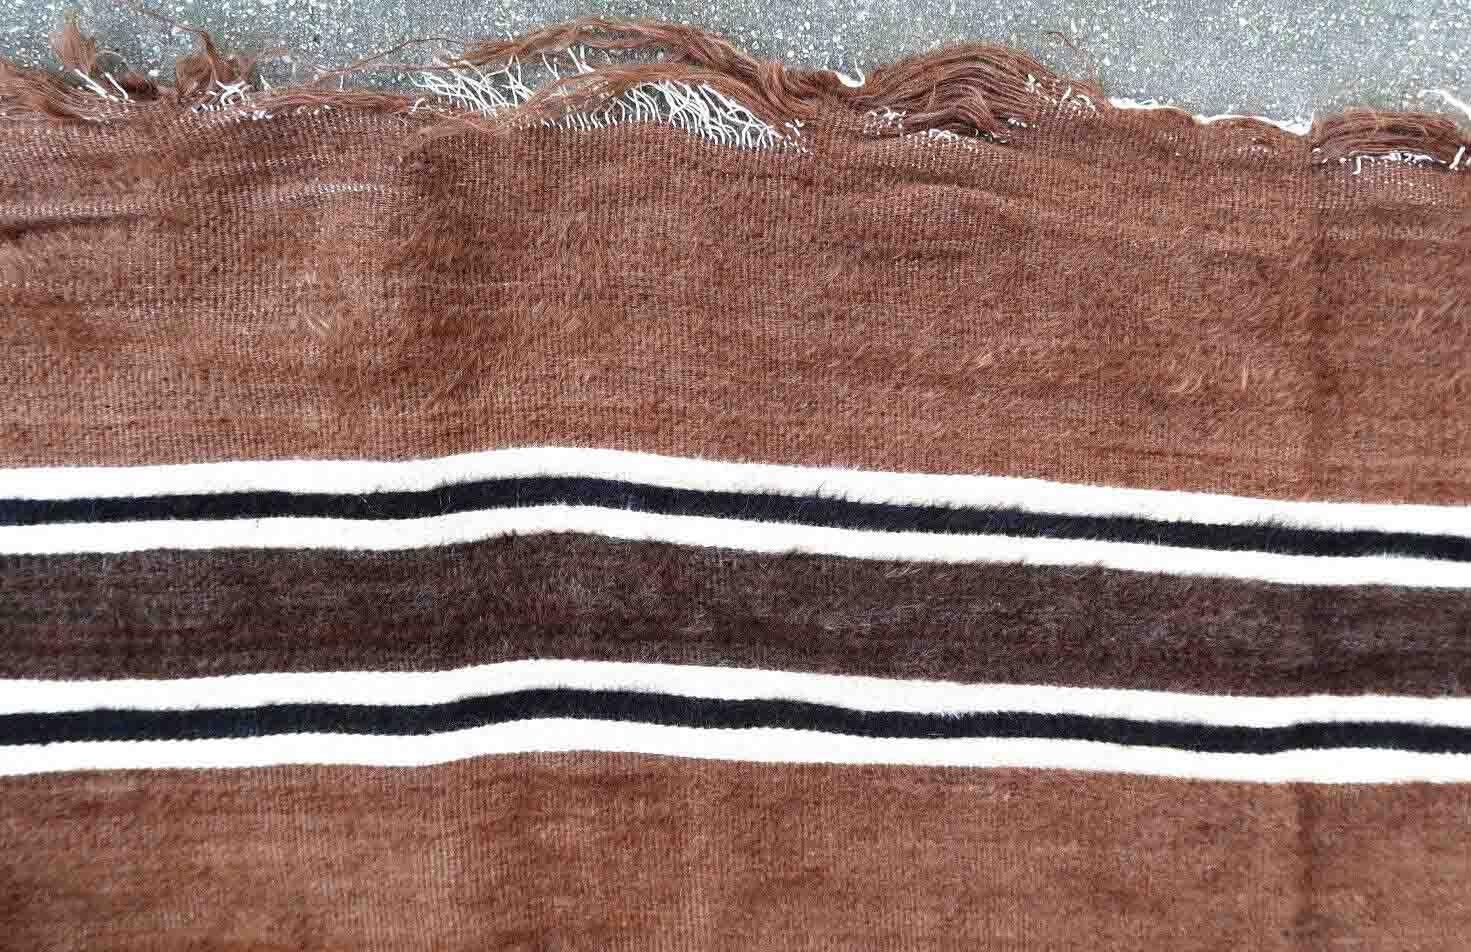 Vintage-Teppich aus Syrien aus Angora-Wolle in brauner Farbe. Der Teppich ist aus der Mitte des 20. Jahrhunderts im Originalzustand, er hat einige Altersspuren.

-Zustand: original, einige Altersspuren,

-CIRCA: 1950er Jahre,

-Größe: 4,8' x